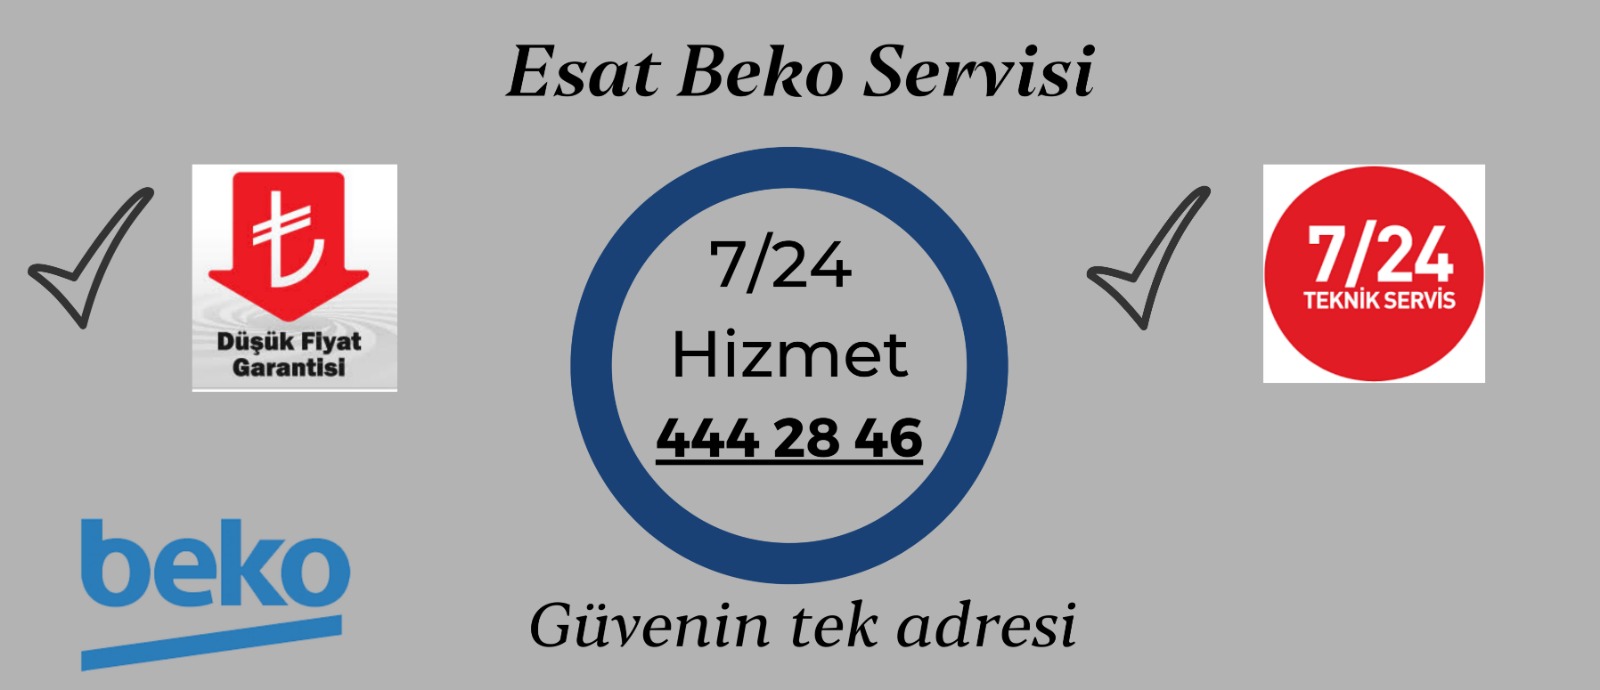 Beko Servisi Esat Ankara